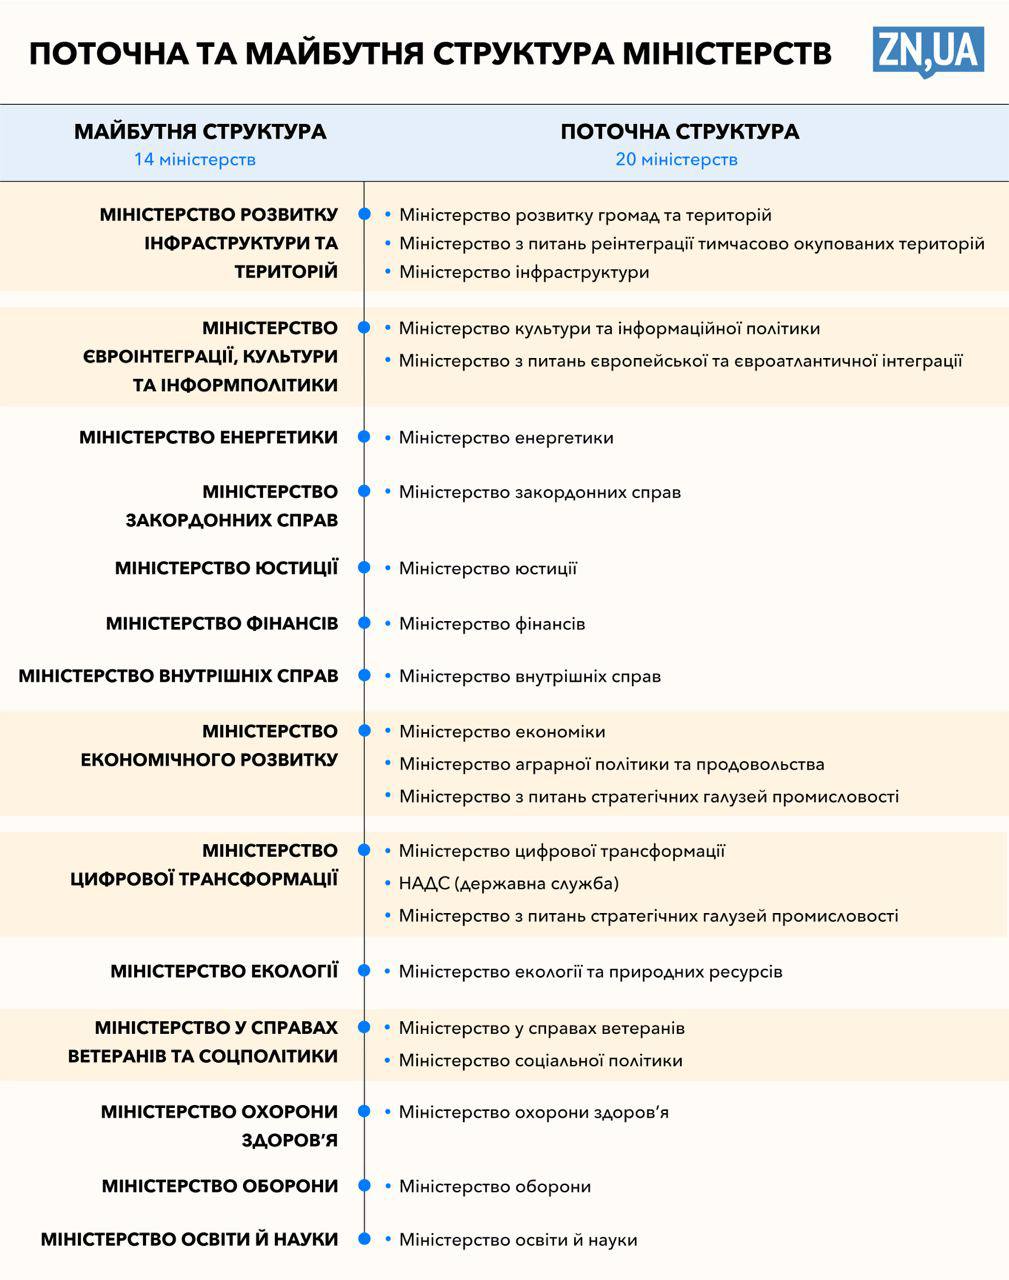 Опубликована схема реорганизации правительства Украины